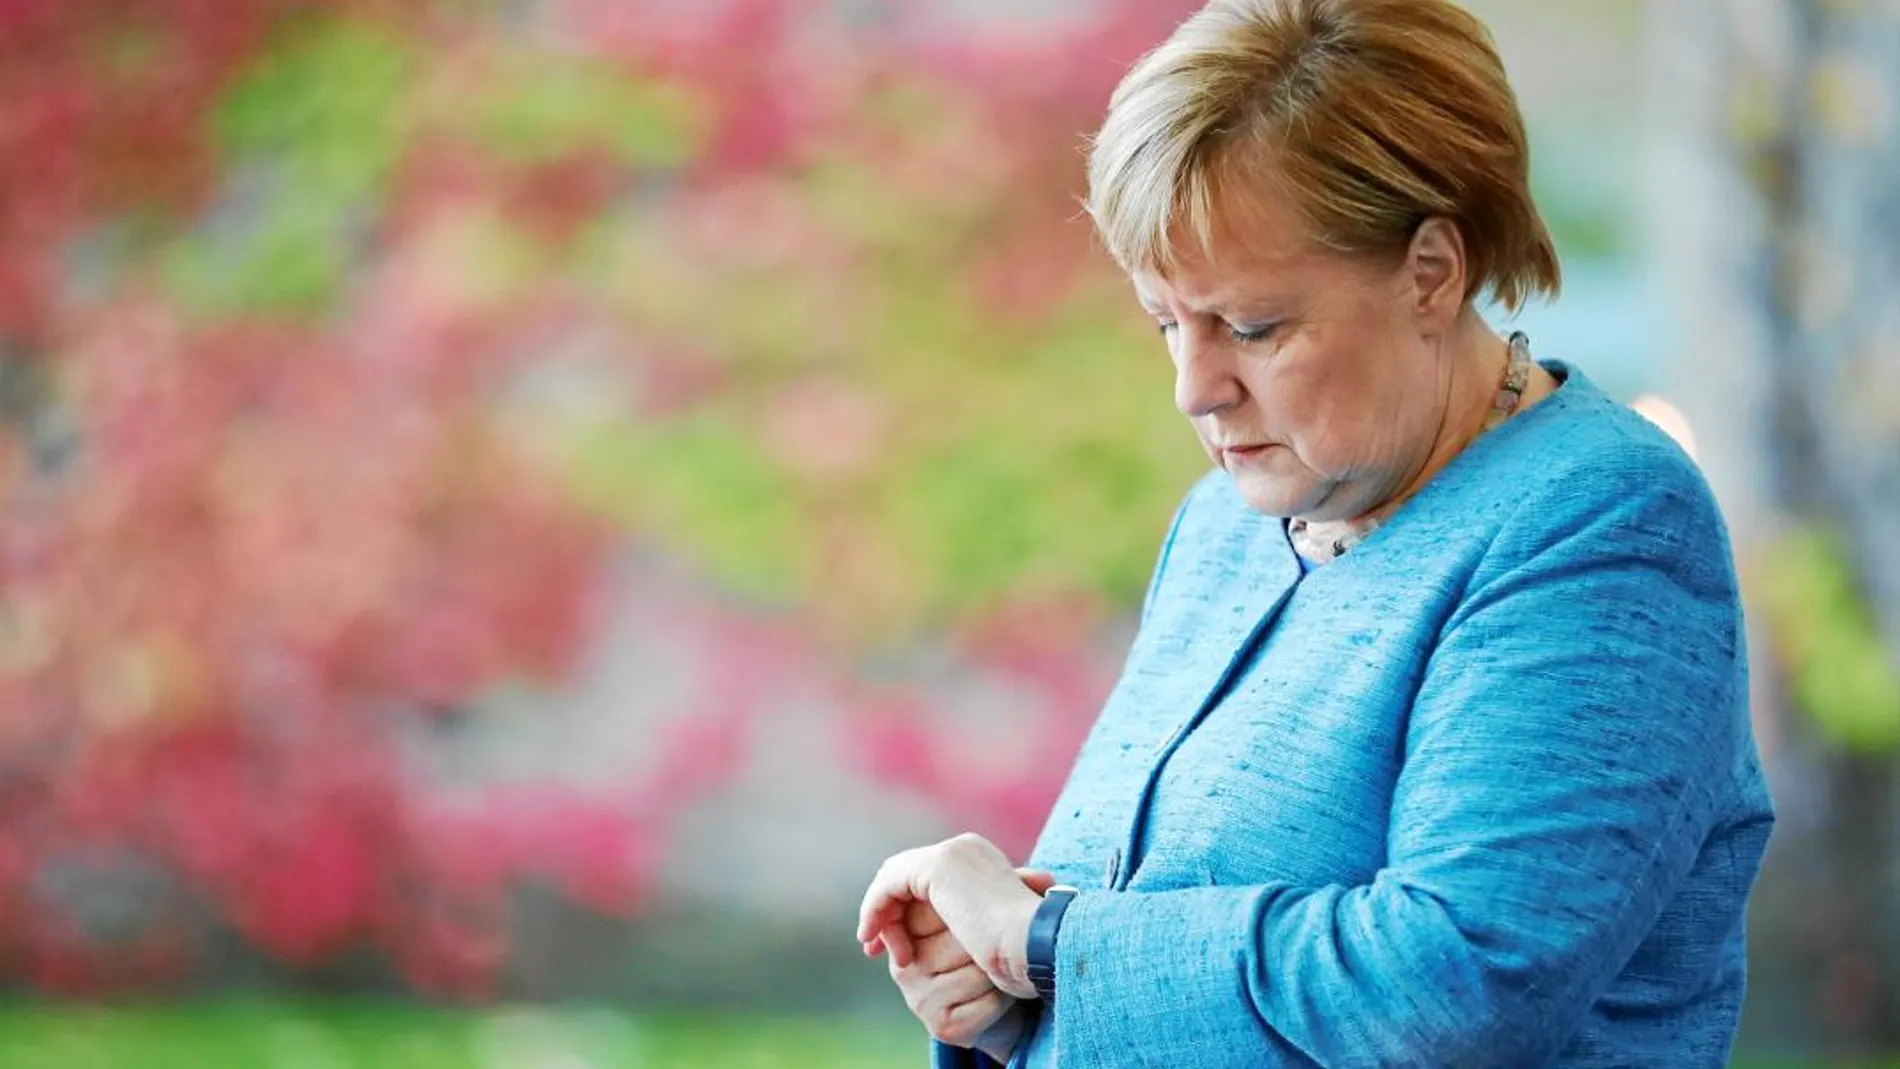 El sector derechista de la CDU acusa a Merkel de haber conducido al partido hacia posiciones socialdemócratas